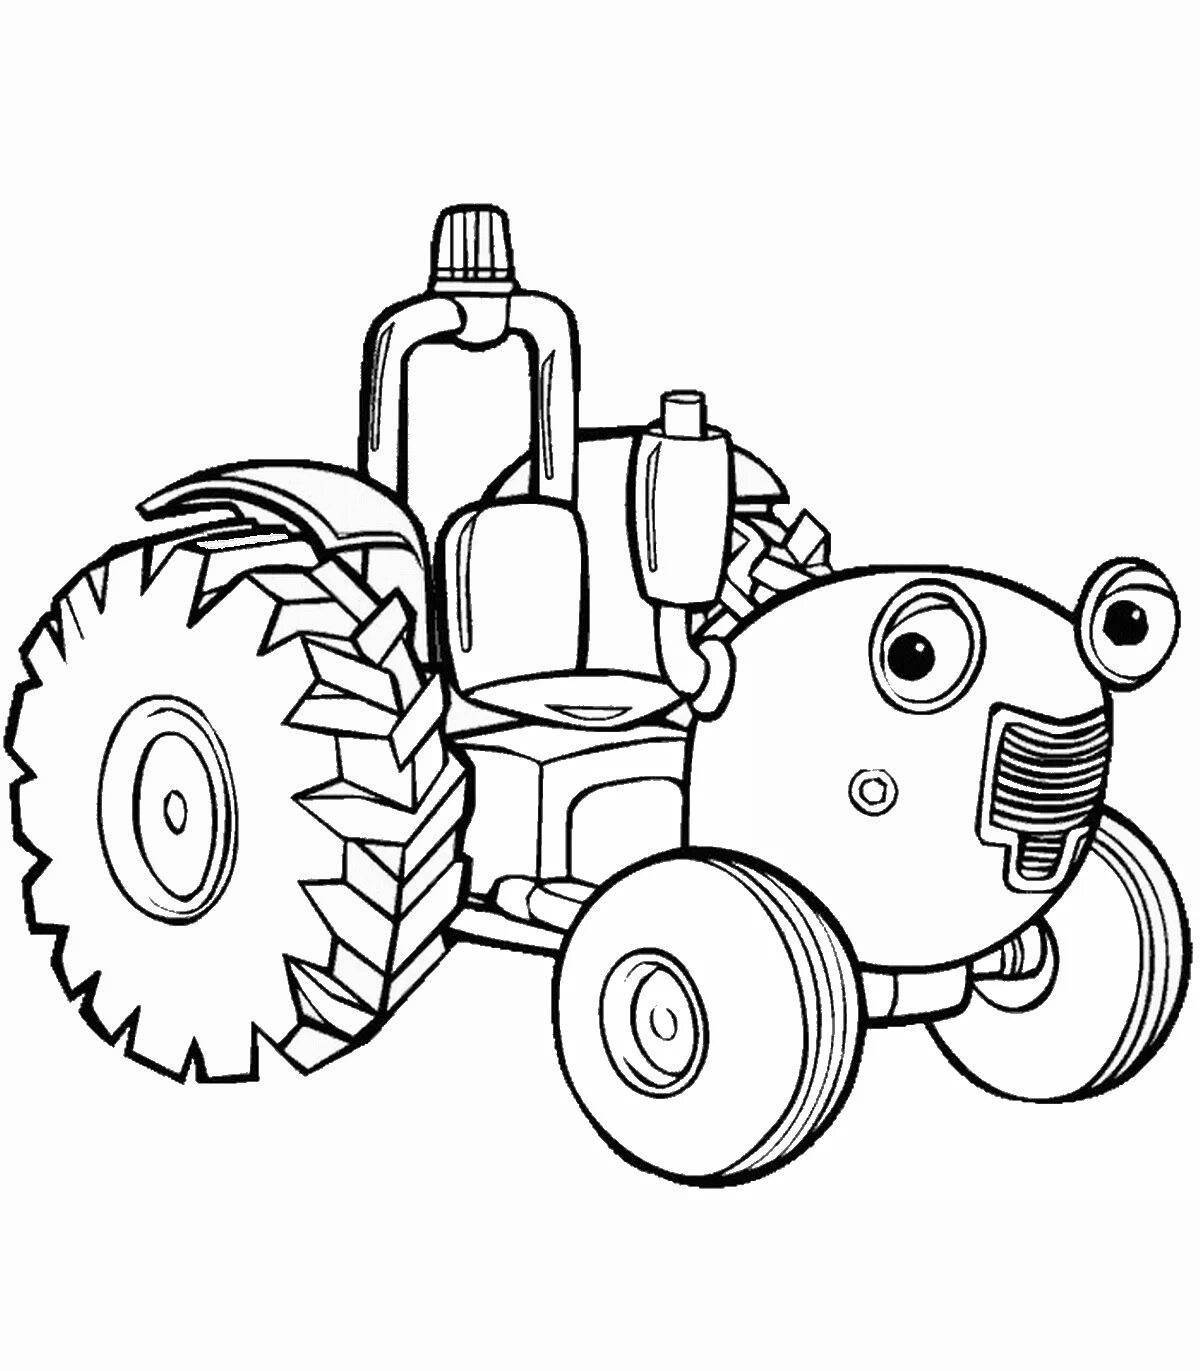 Attractive tractor cartoon coloring page